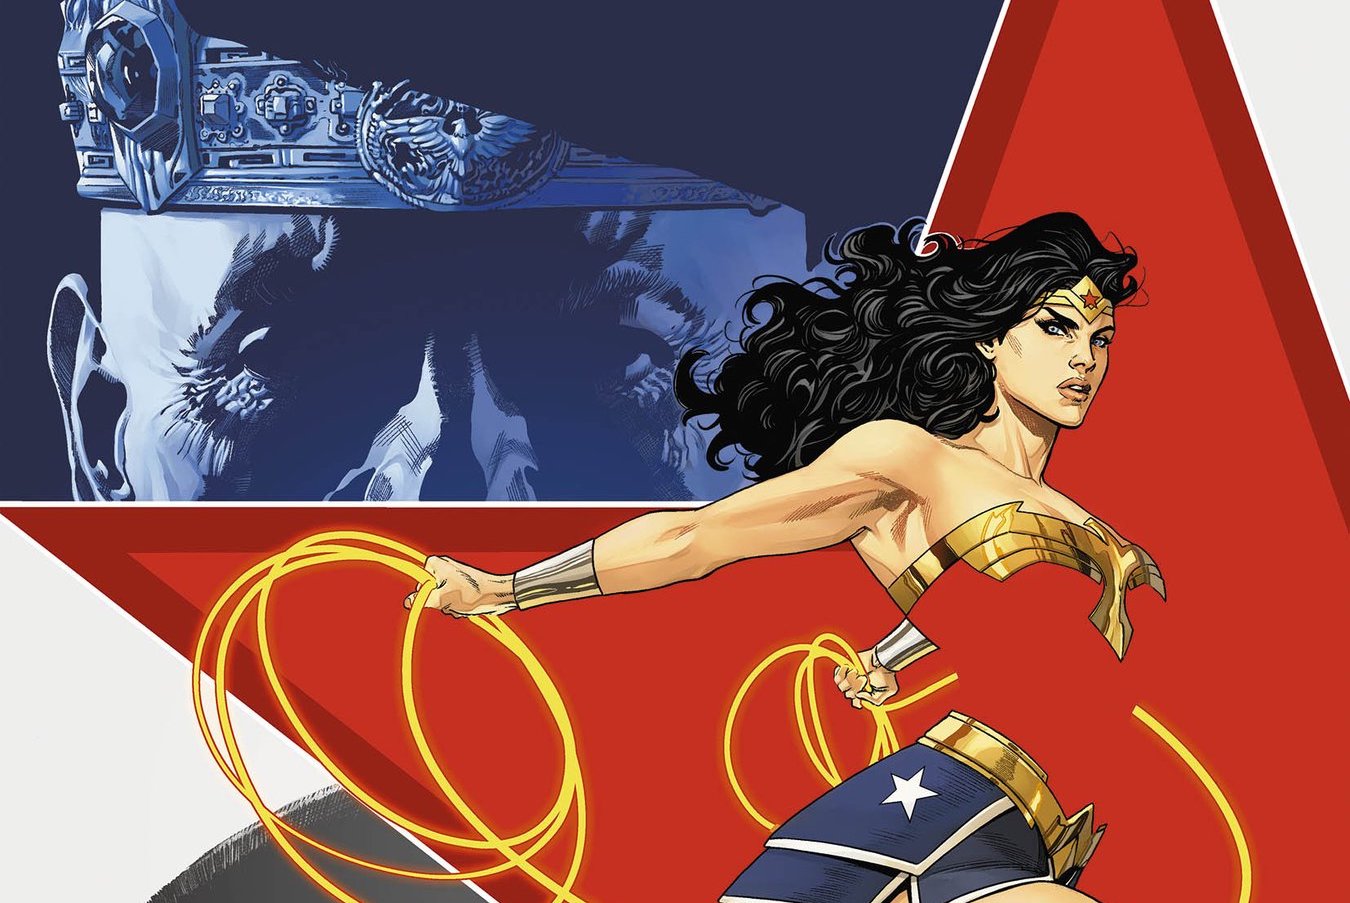 'Wonder Woman' #5 builds toward a war